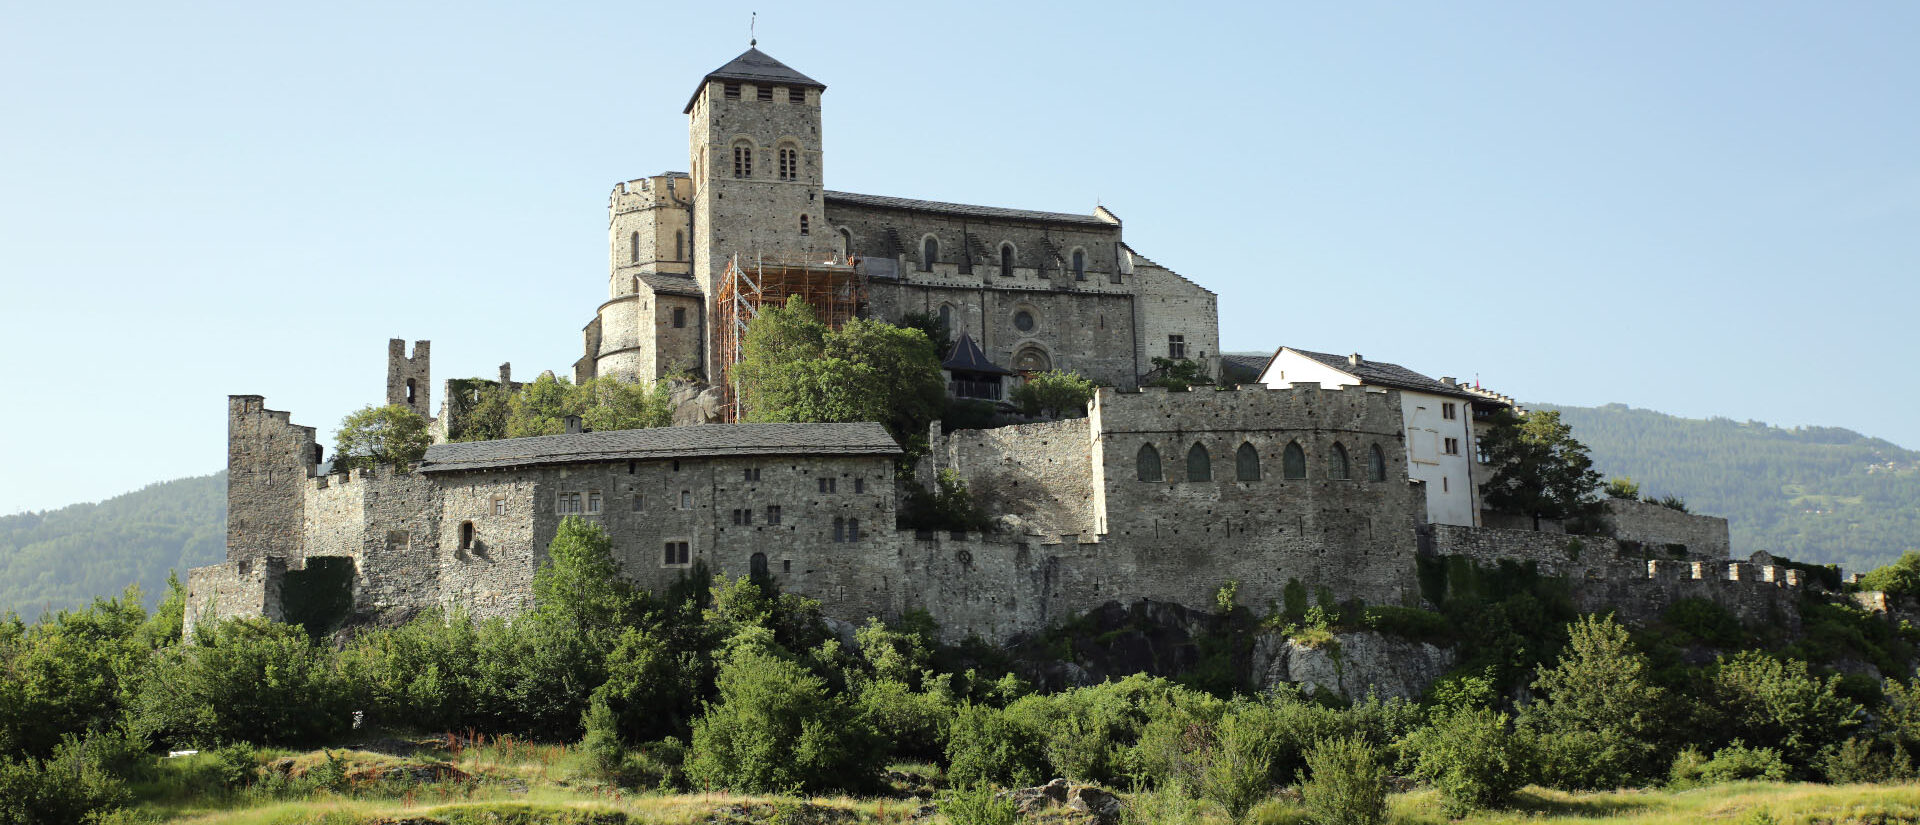 La Basilique et château de Valère, autrefois demeure des chanoines du Chapitre cathédrale de Sion, a aussi vu sa fréquentation baisser durant la pandémie. | © B. Hallet